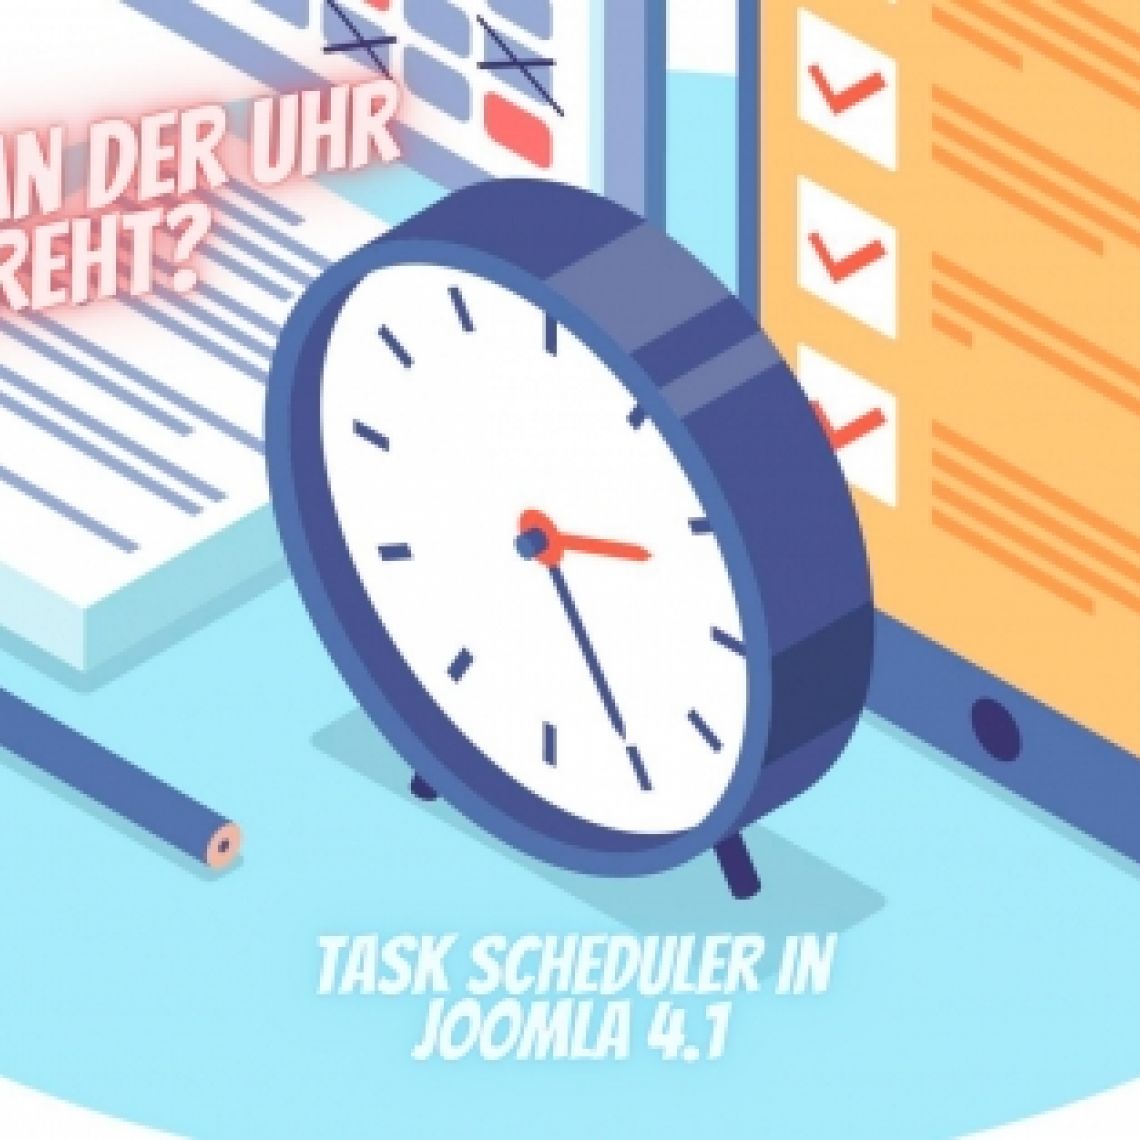 Wer hat an der Uhr gedreht? - Task Scheduler in Joomla 4.1